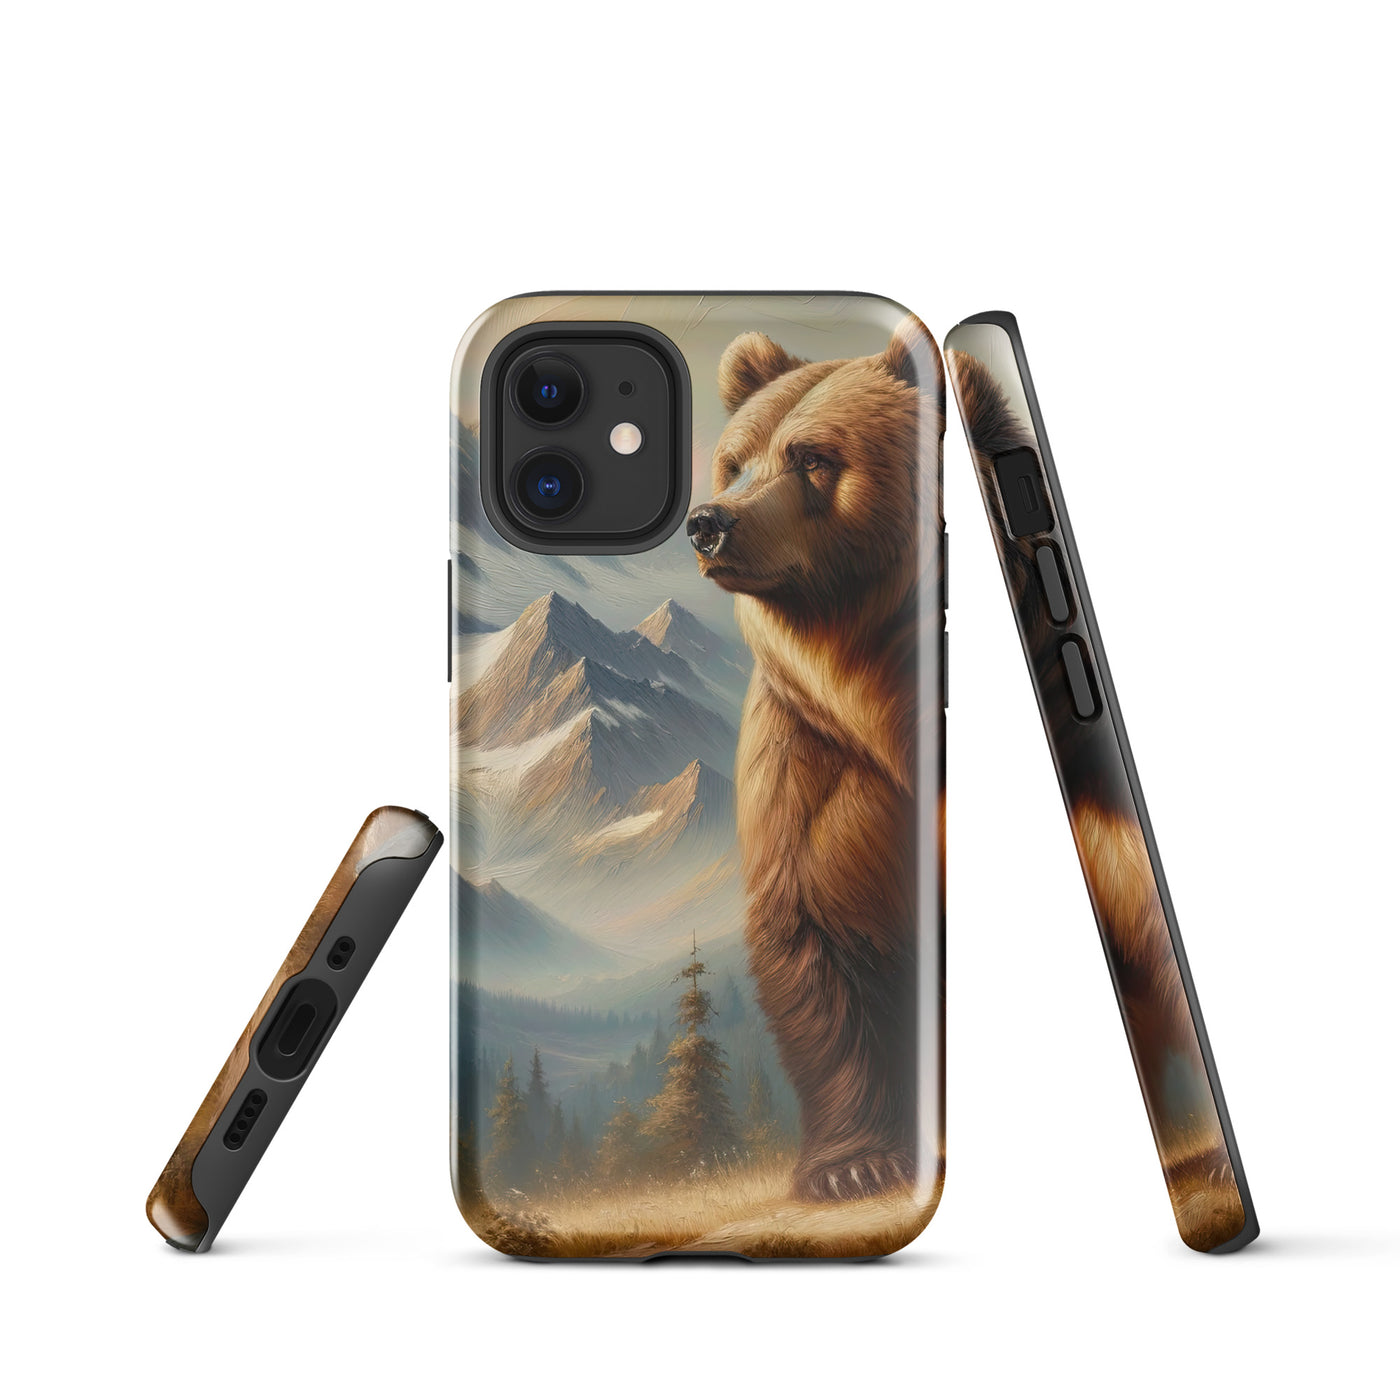 Ölgemälde eines königlichen Bären vor der majestätischen Alpenkulisse - iPhone Schutzhülle (robust) camping xxx yyy zzz iPhone 12 mini